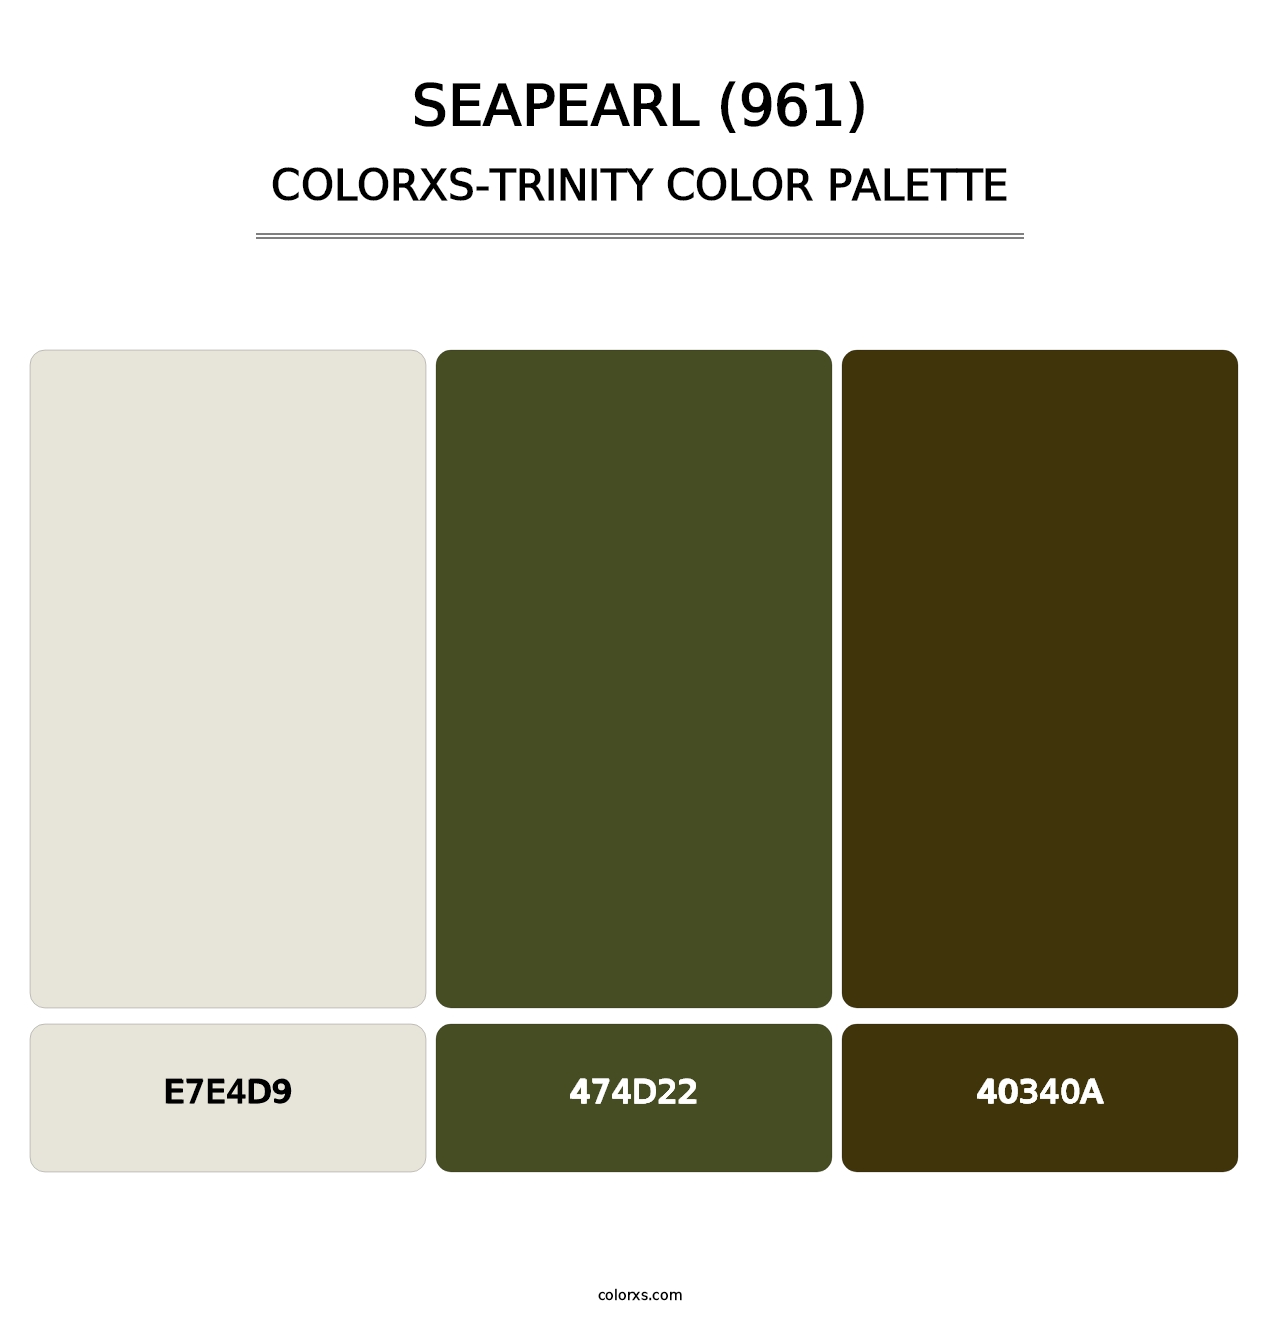 Seapearl (961) - Colorxs Trinity Palette